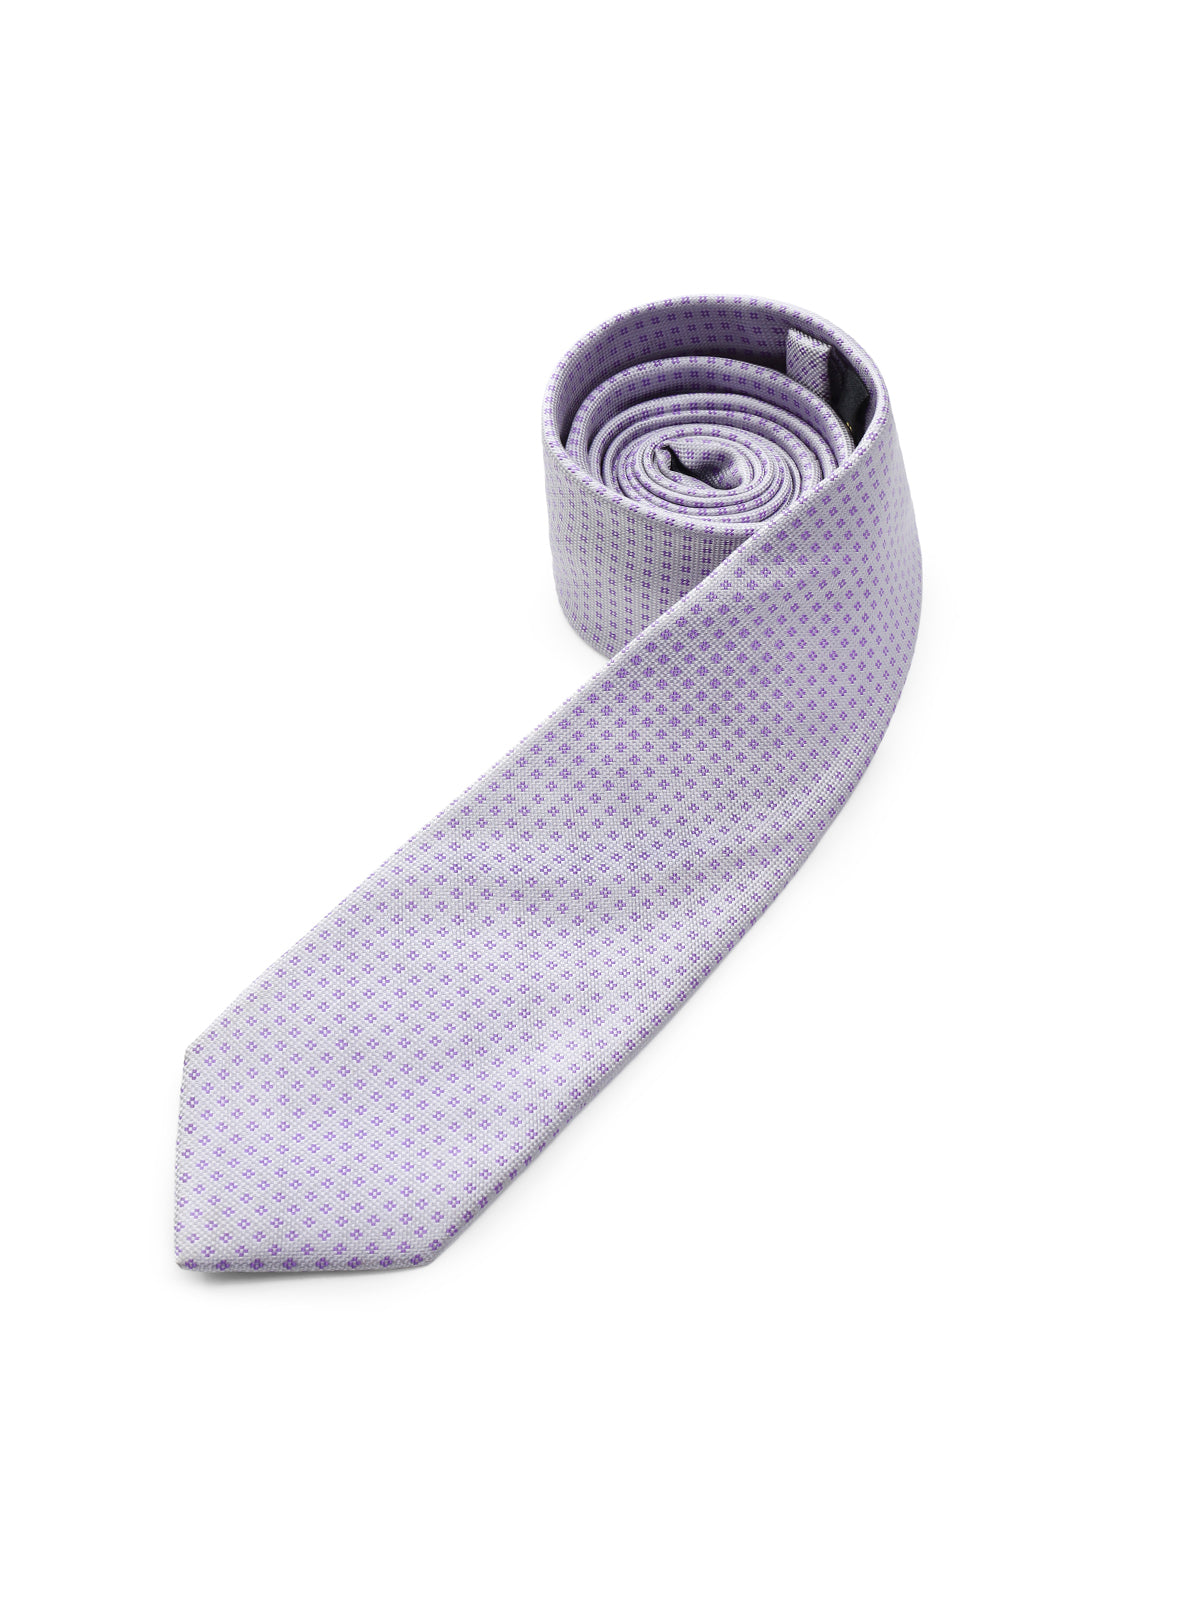 Lavender Tie - EAMT24-072